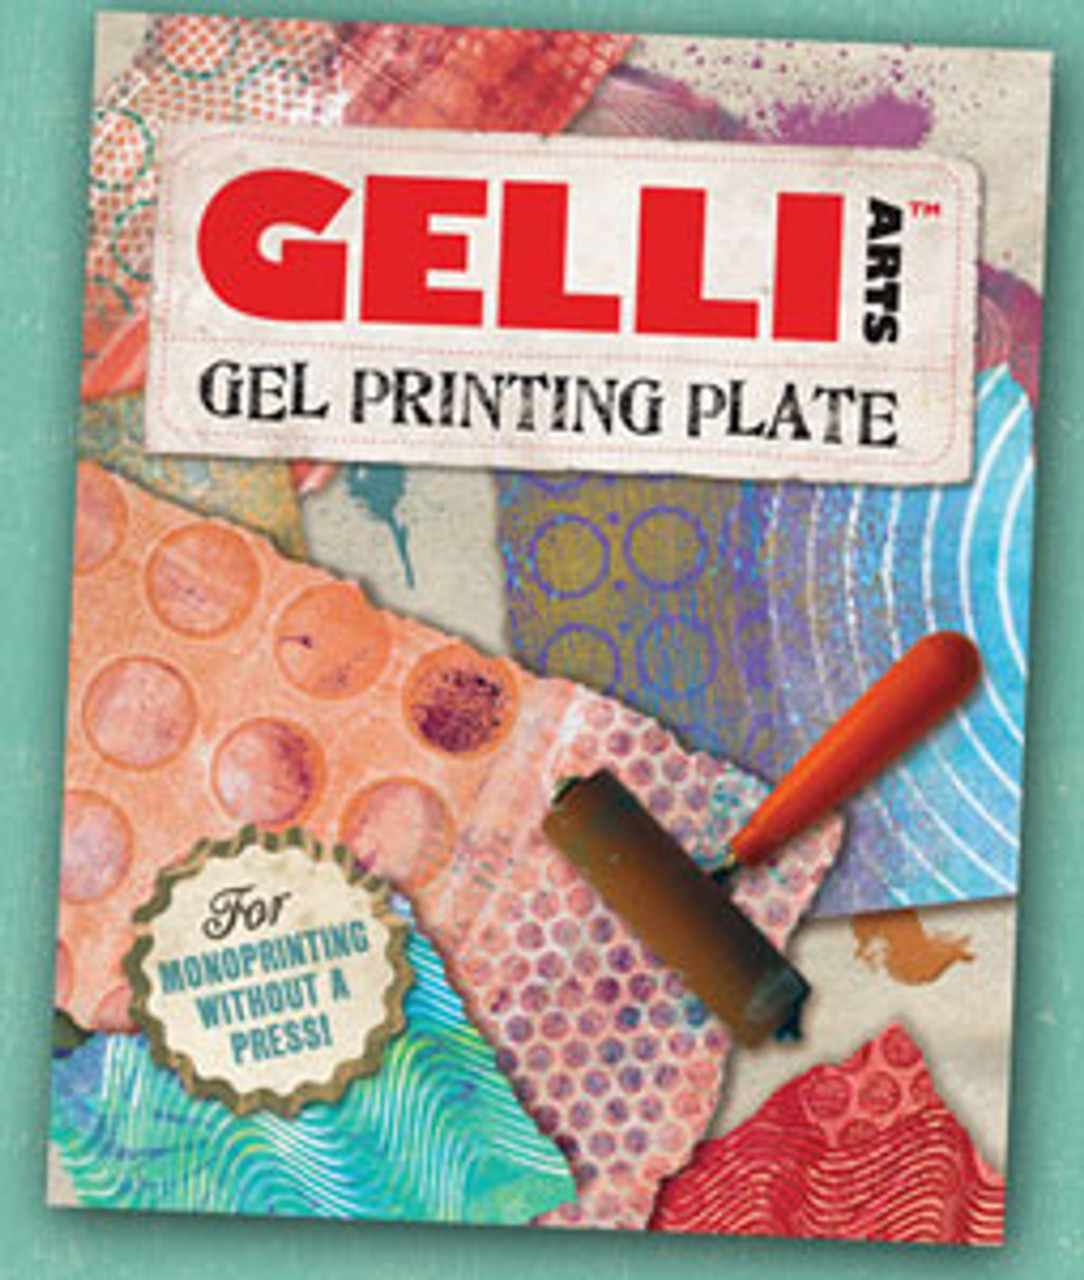 Gelli Arts 8x10 Gel Printing Plate